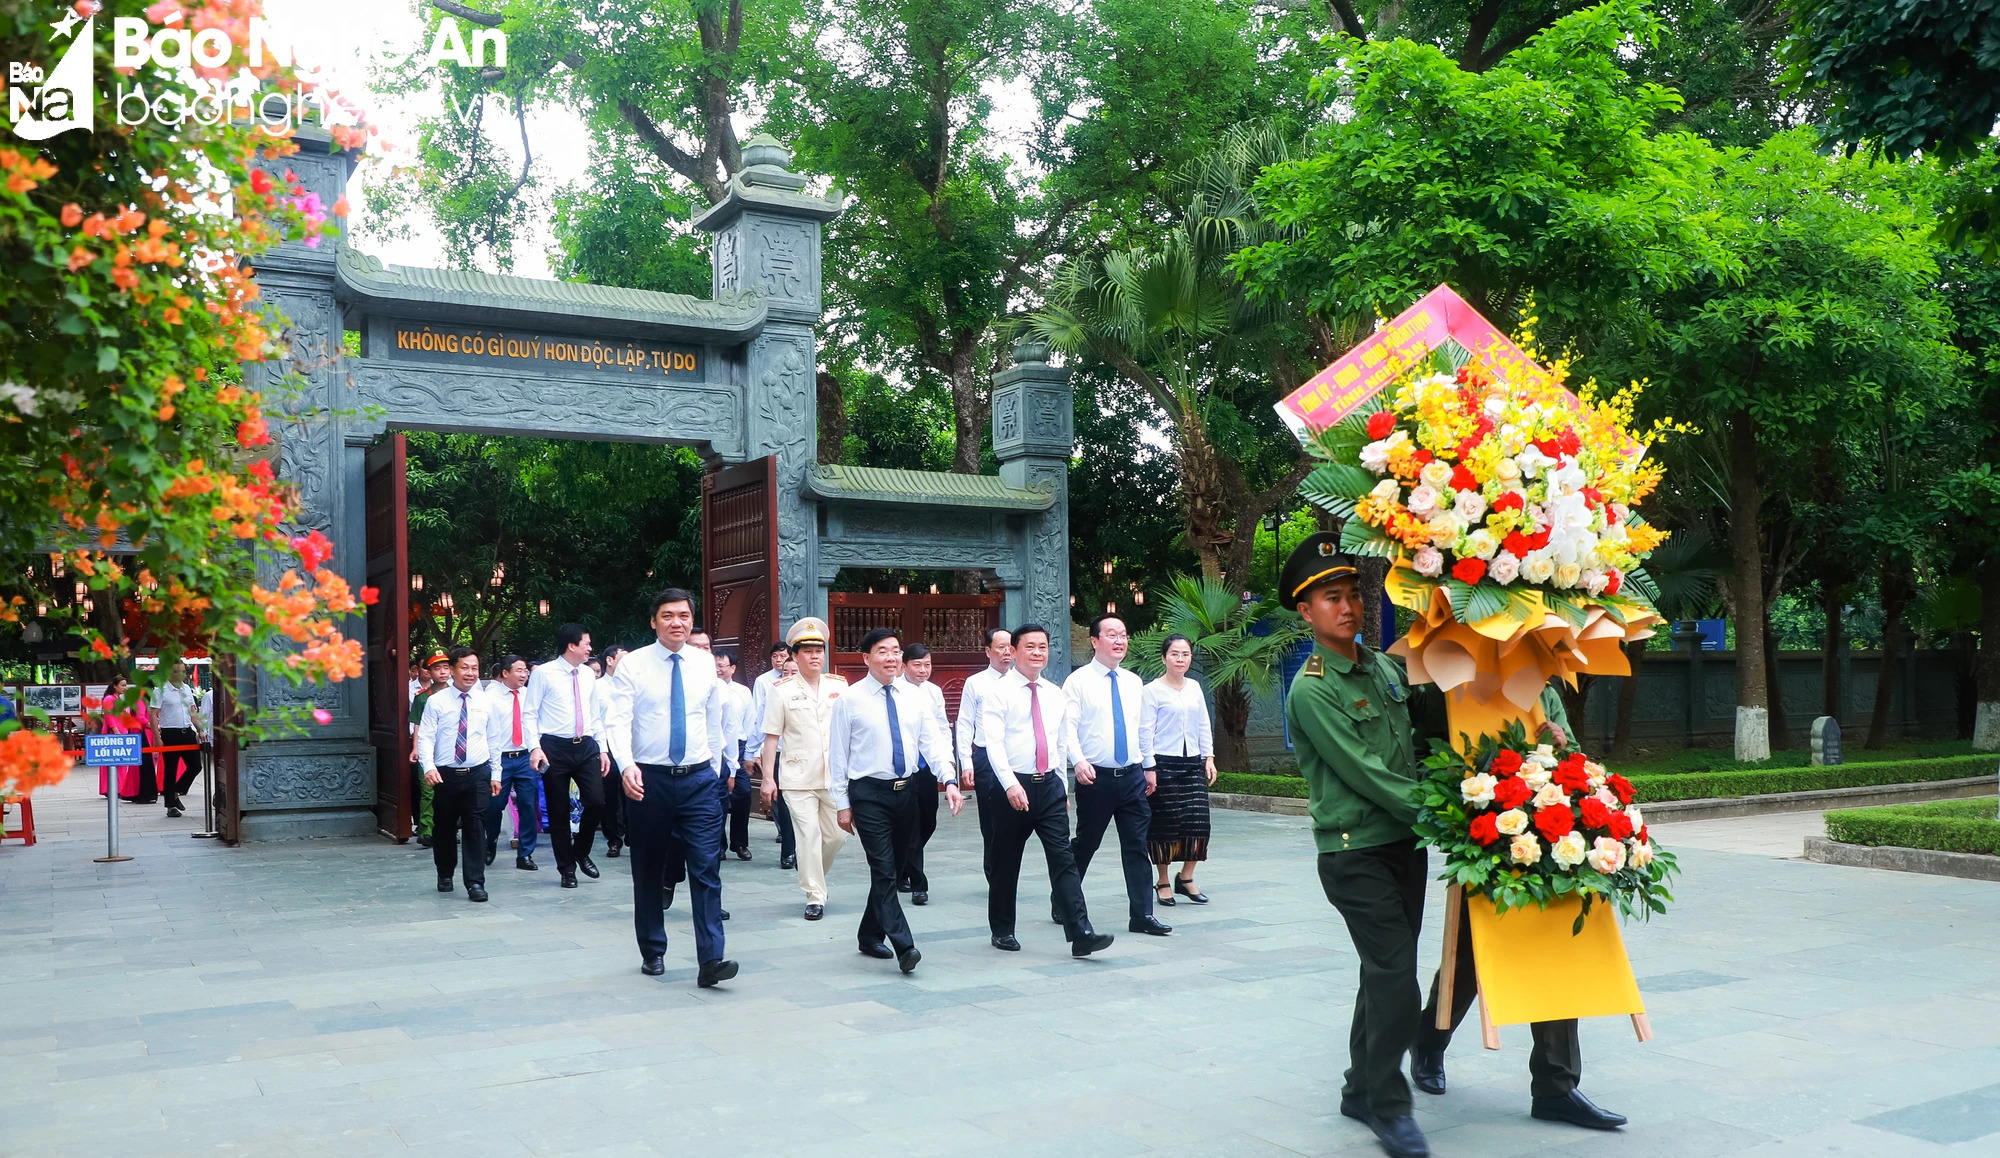 Lãnh đạo tỉnh Nghệ An dâng hoa, dâng hương tưởng niệm Chủ tịch Hồ Chí Minh nhân kỷ niệm 134 năm ngày sinh của Người